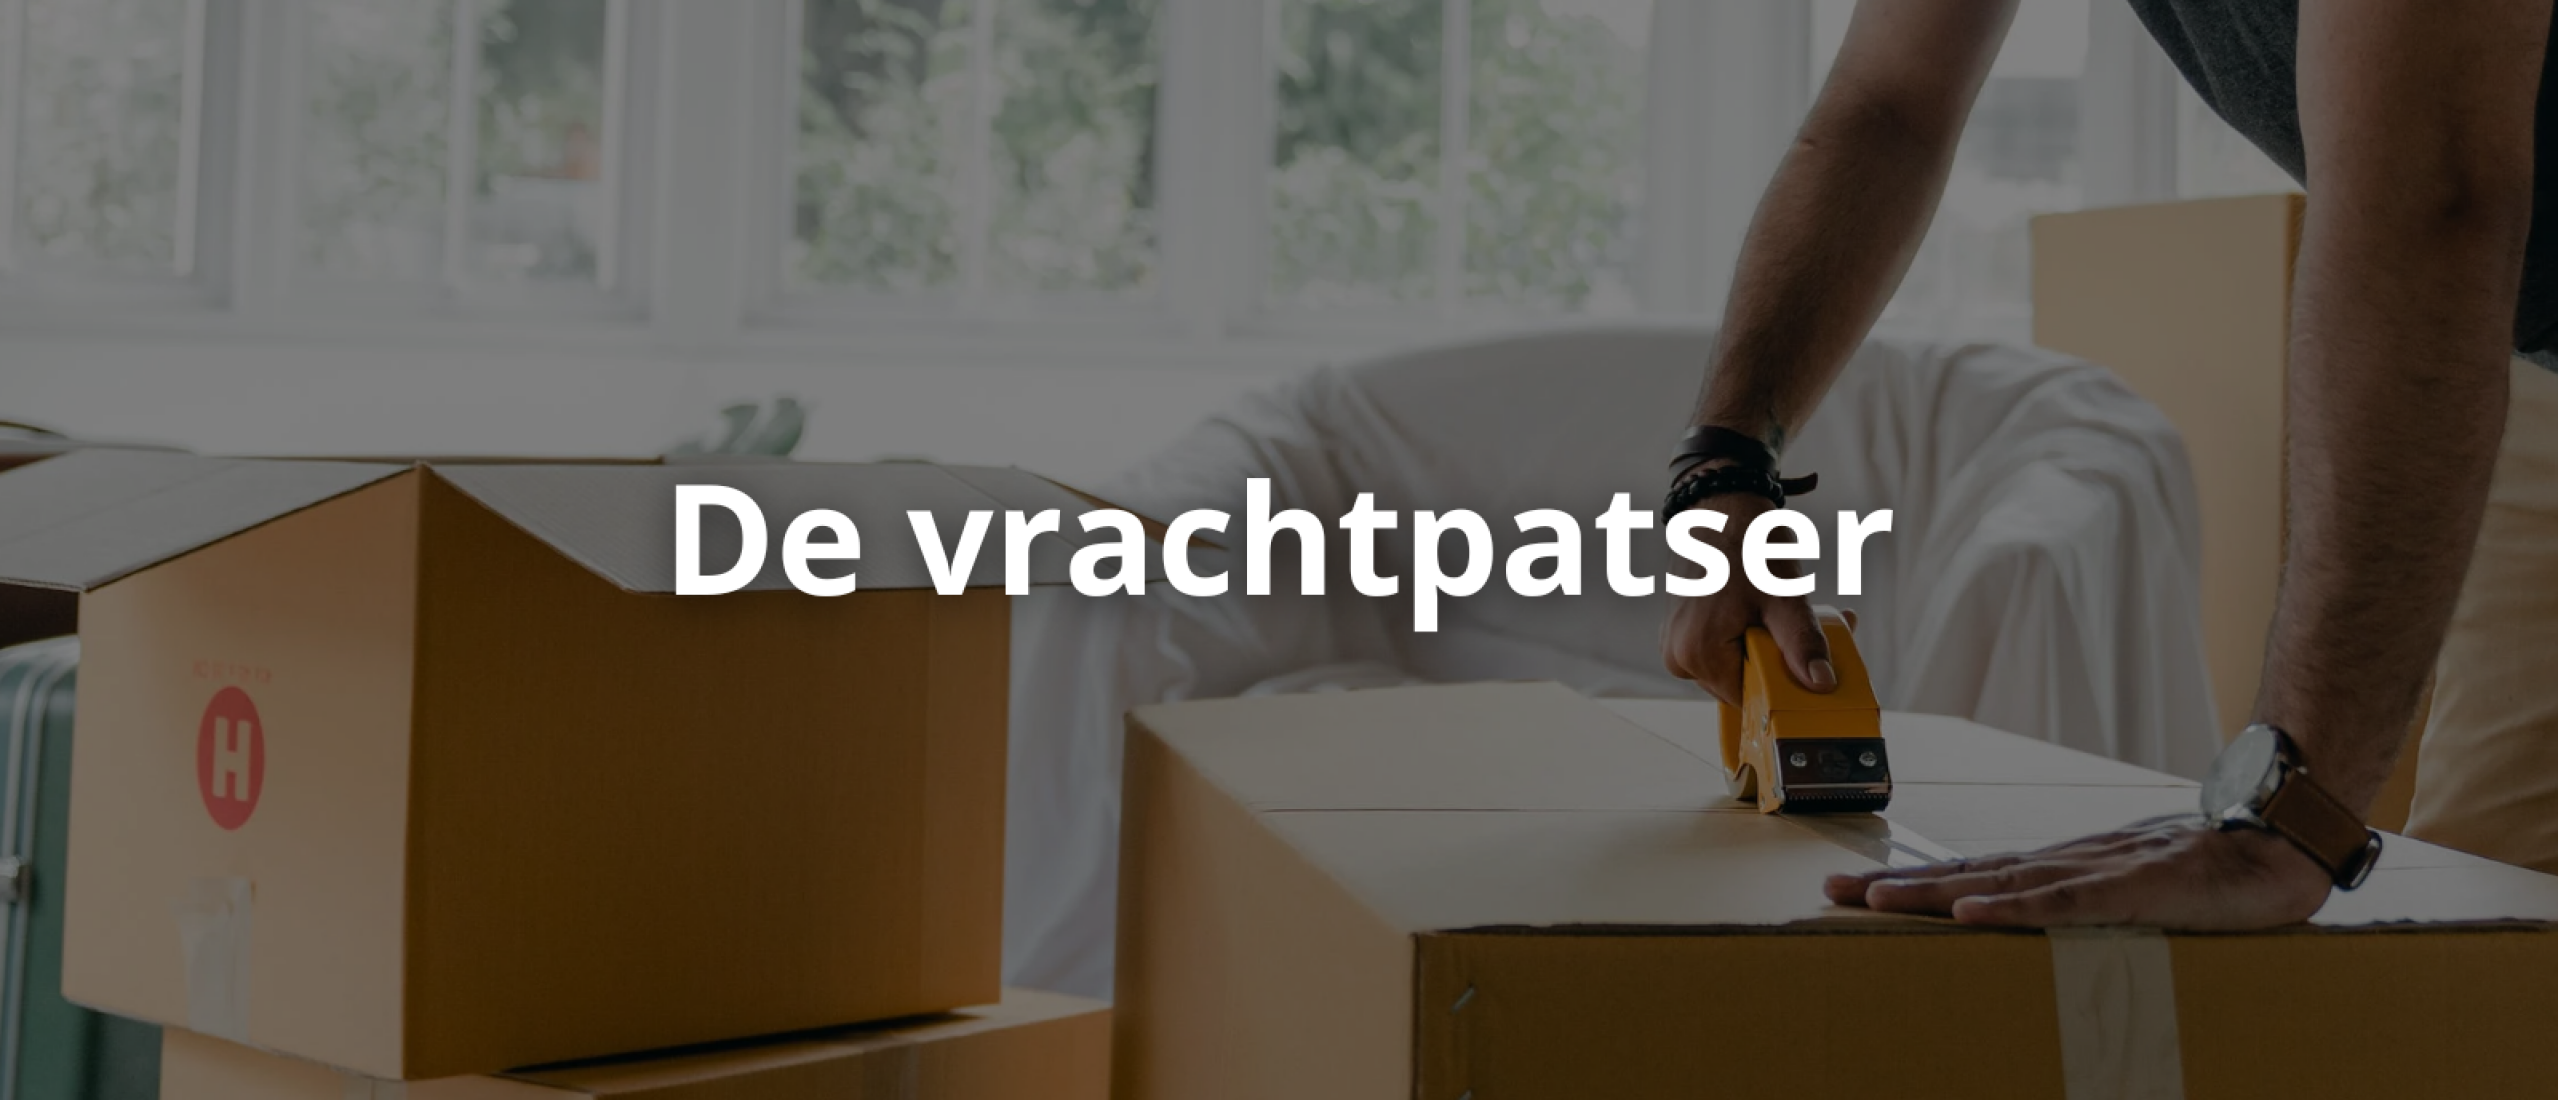 Transportbedrijf: Vrachtpatser - De Specialist in Verhuizingen en Montages